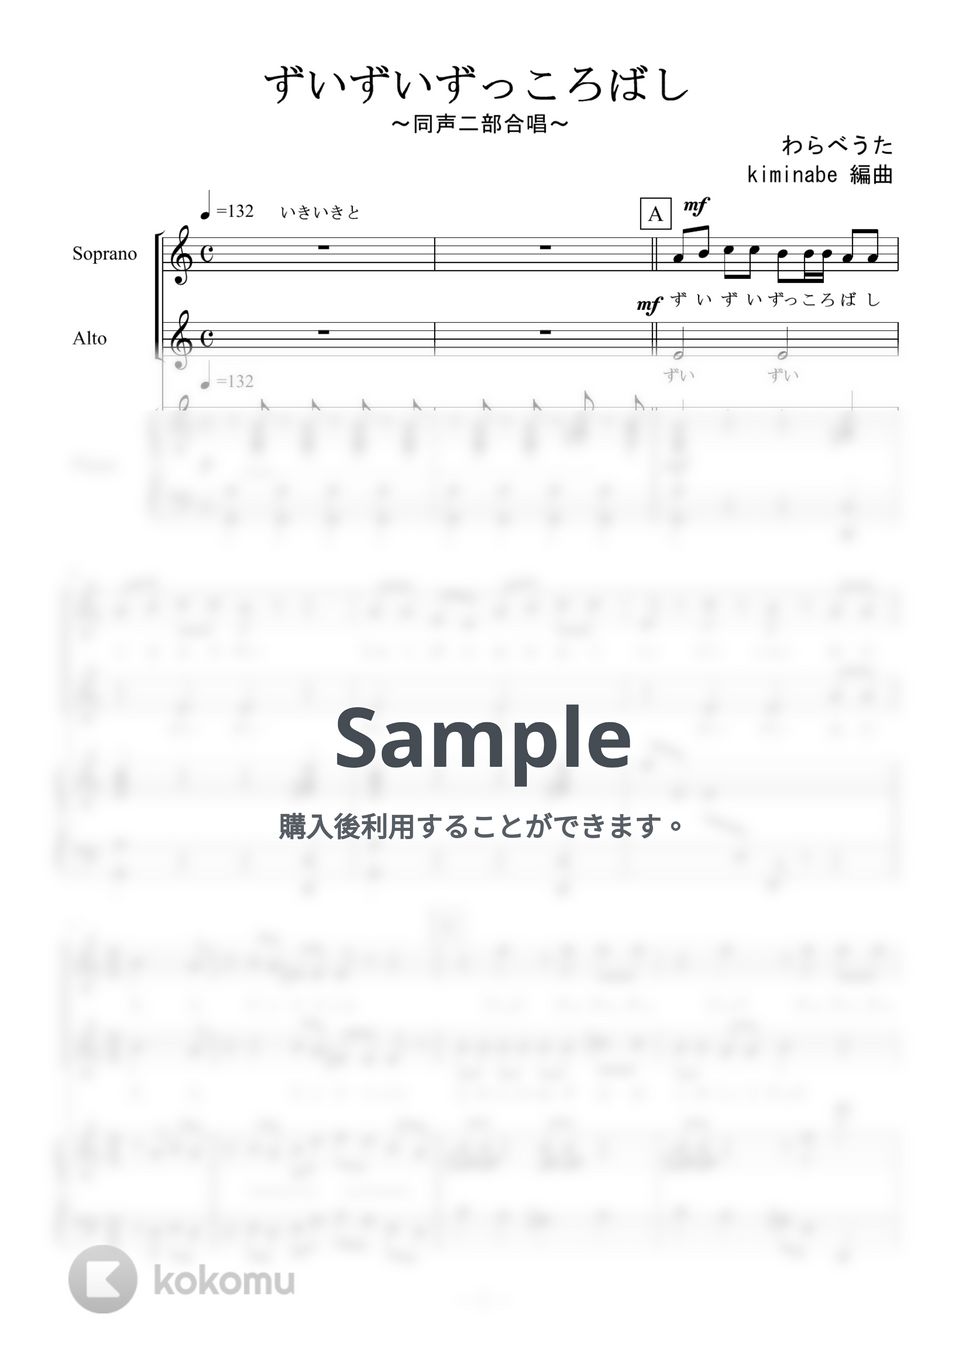 ずいずいずっころばし (同声二部合唱) by kiminabe